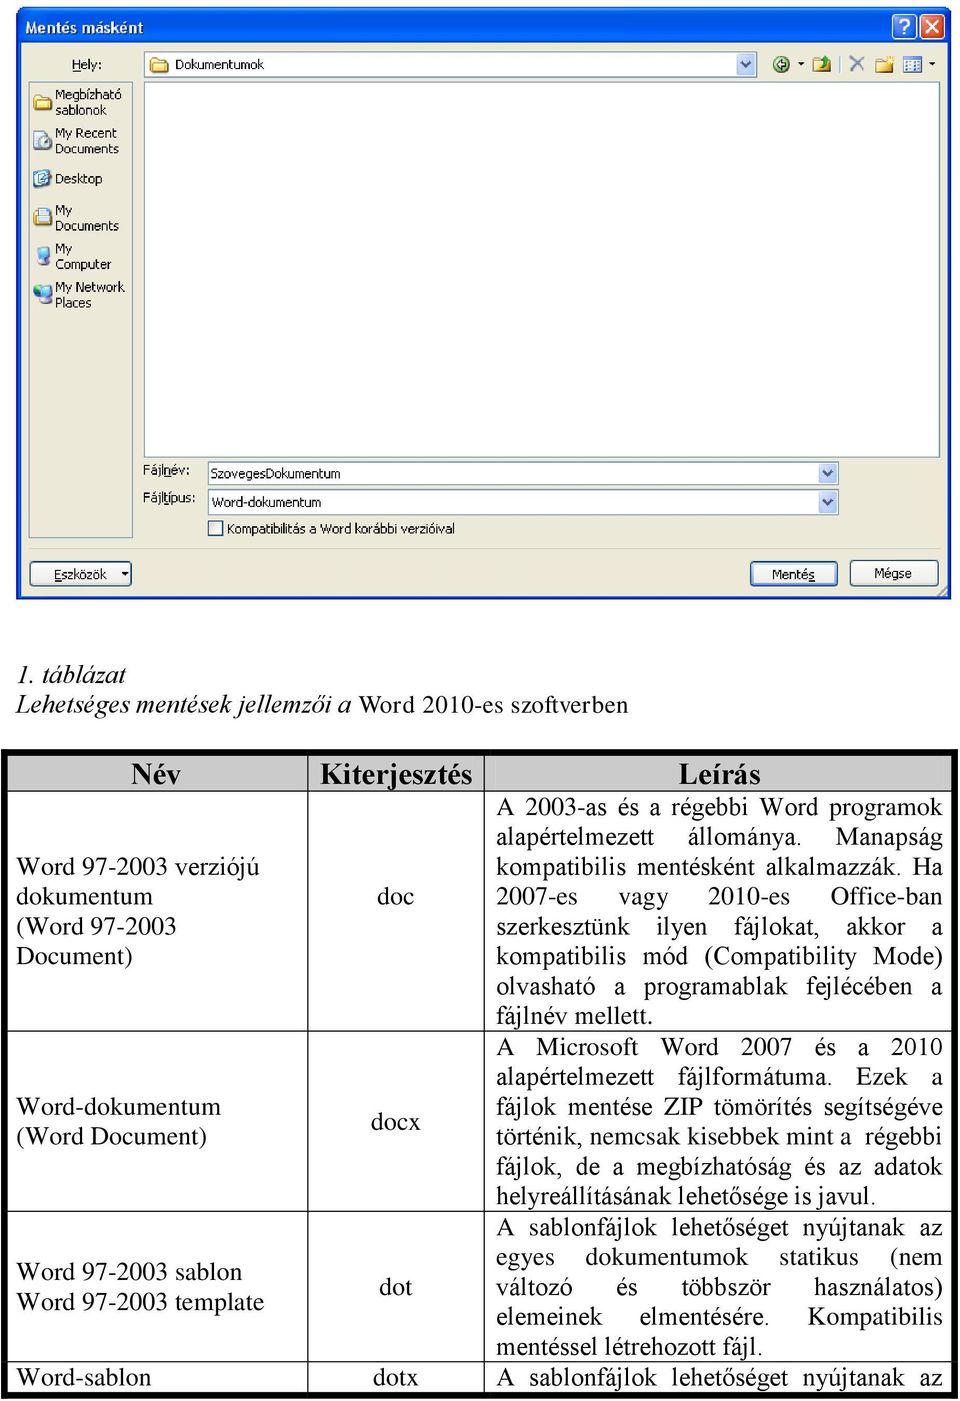 Ha dokumentum doc 2007-es vagy 2010-es Office-ban (Word 97-2003 szerkesztünk ilyen fájlokat, akkor a Document) kompatibilis mód (Compatibility Mode) olvasható a programablak fejlécében a fájlnév